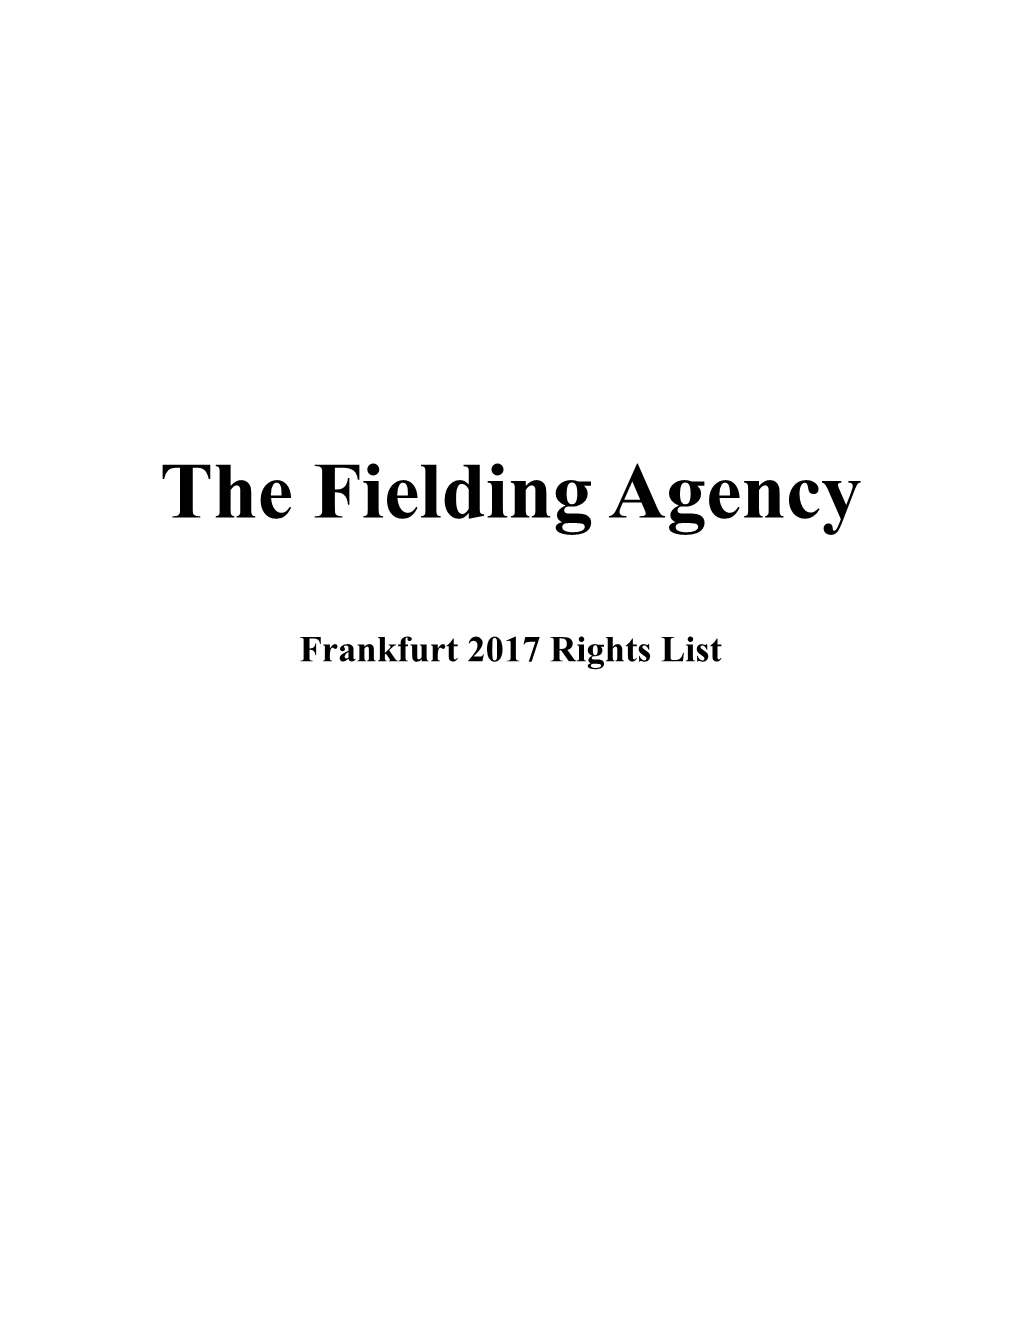 The Fielding Agency